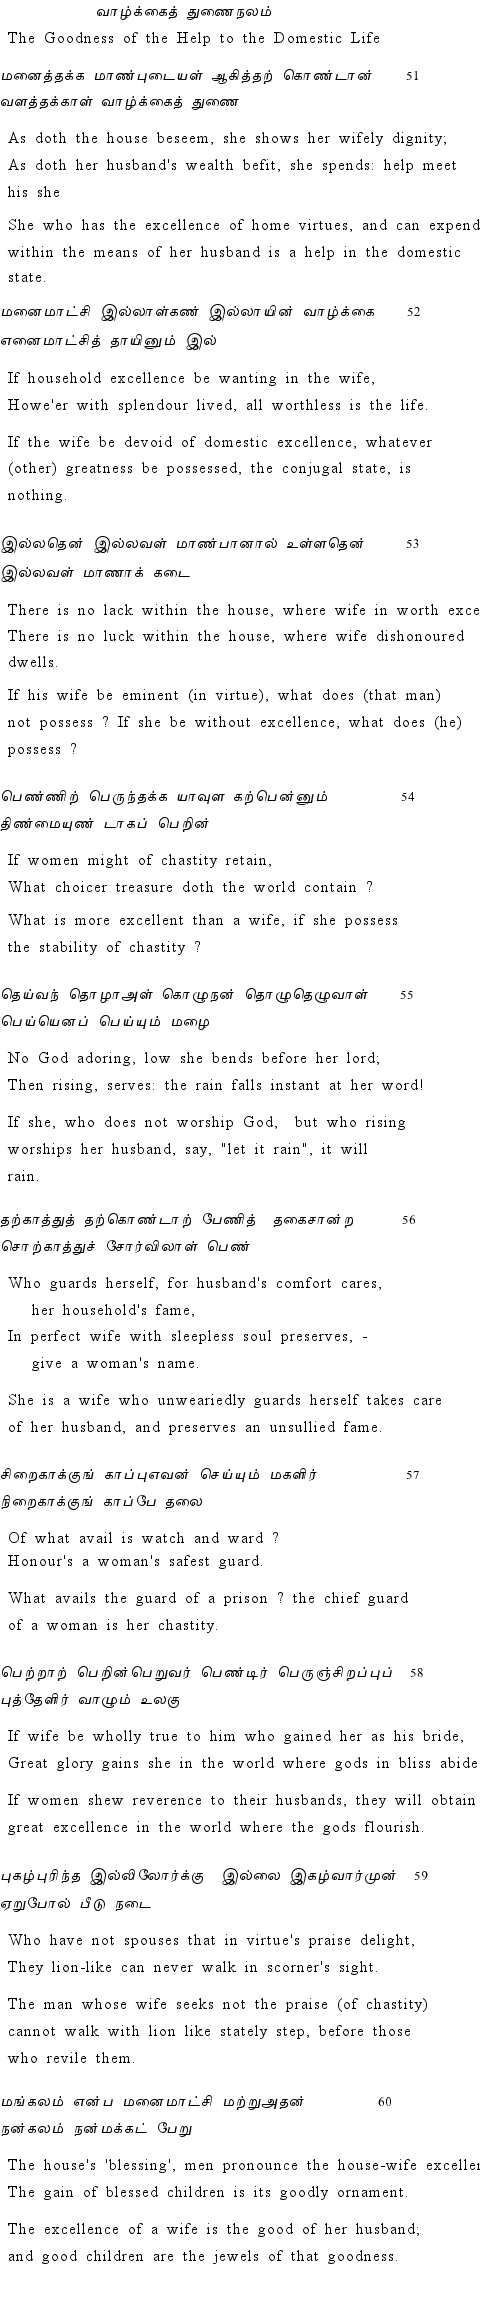 Text of Adhikaram 6